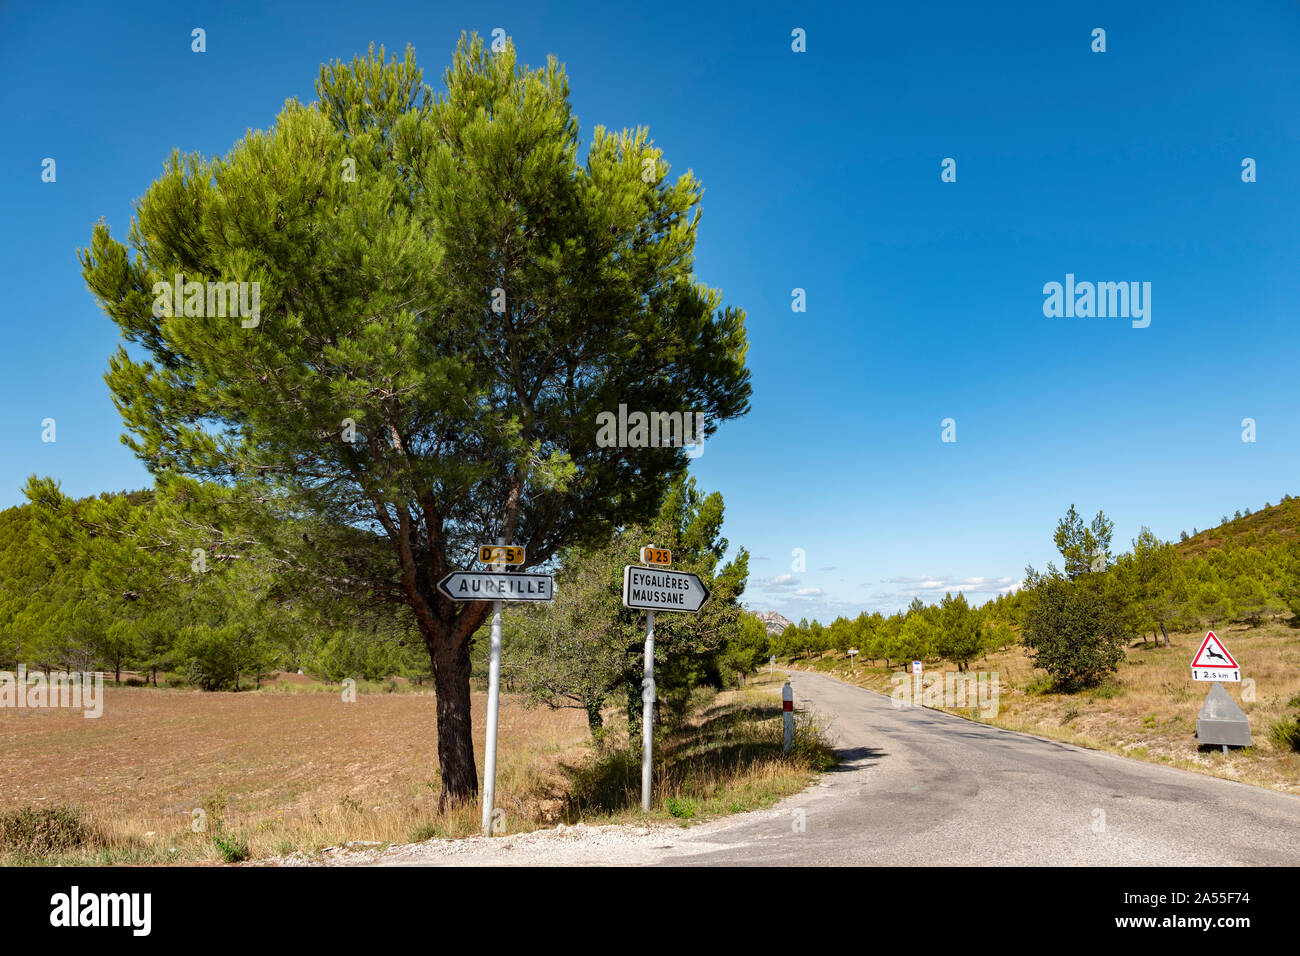 Verkehrszeichen auf der D25 in der Nähe von Aureille, Provence, Frankreich. Stockfoto